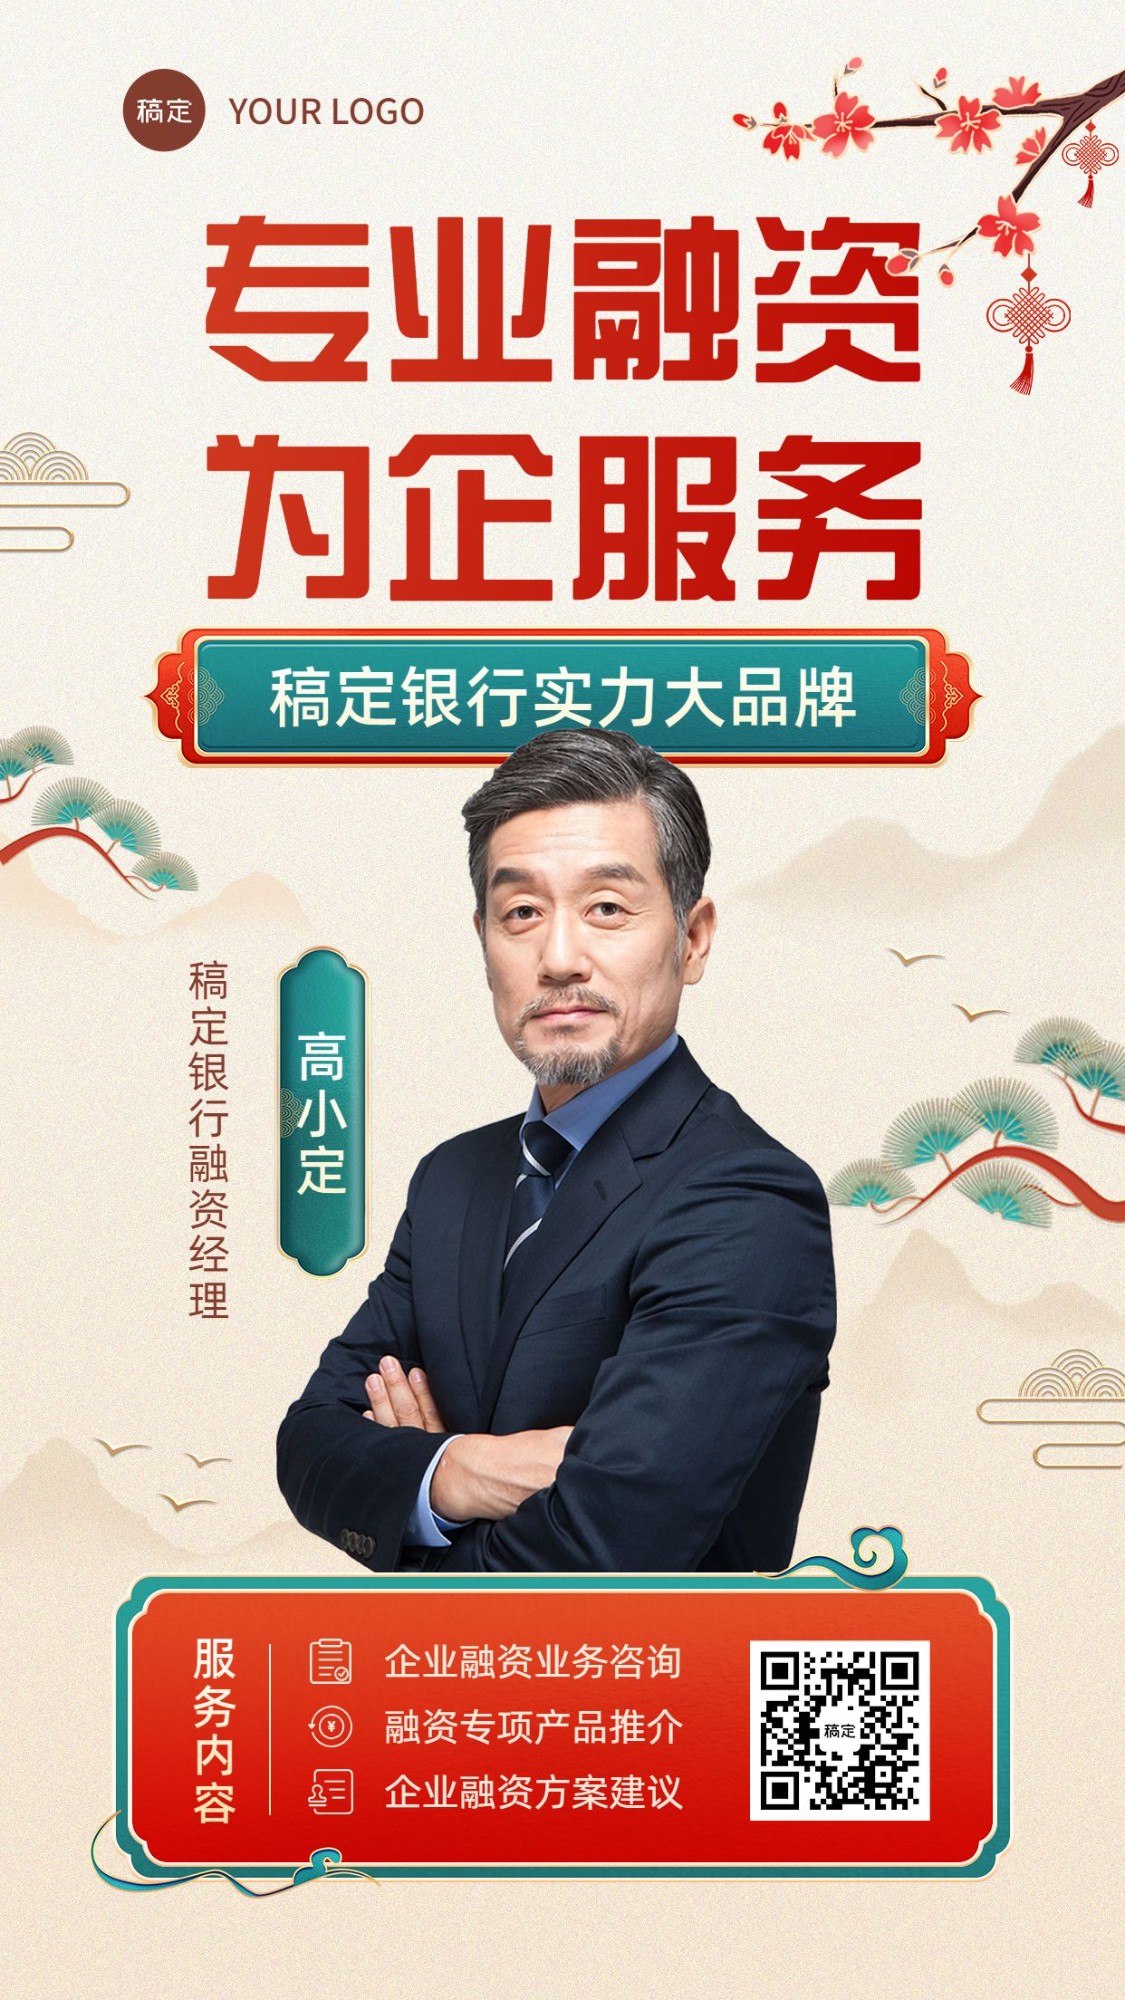 金融融资经理个人形象宣传业务介绍社交名片中国风手机海报套装